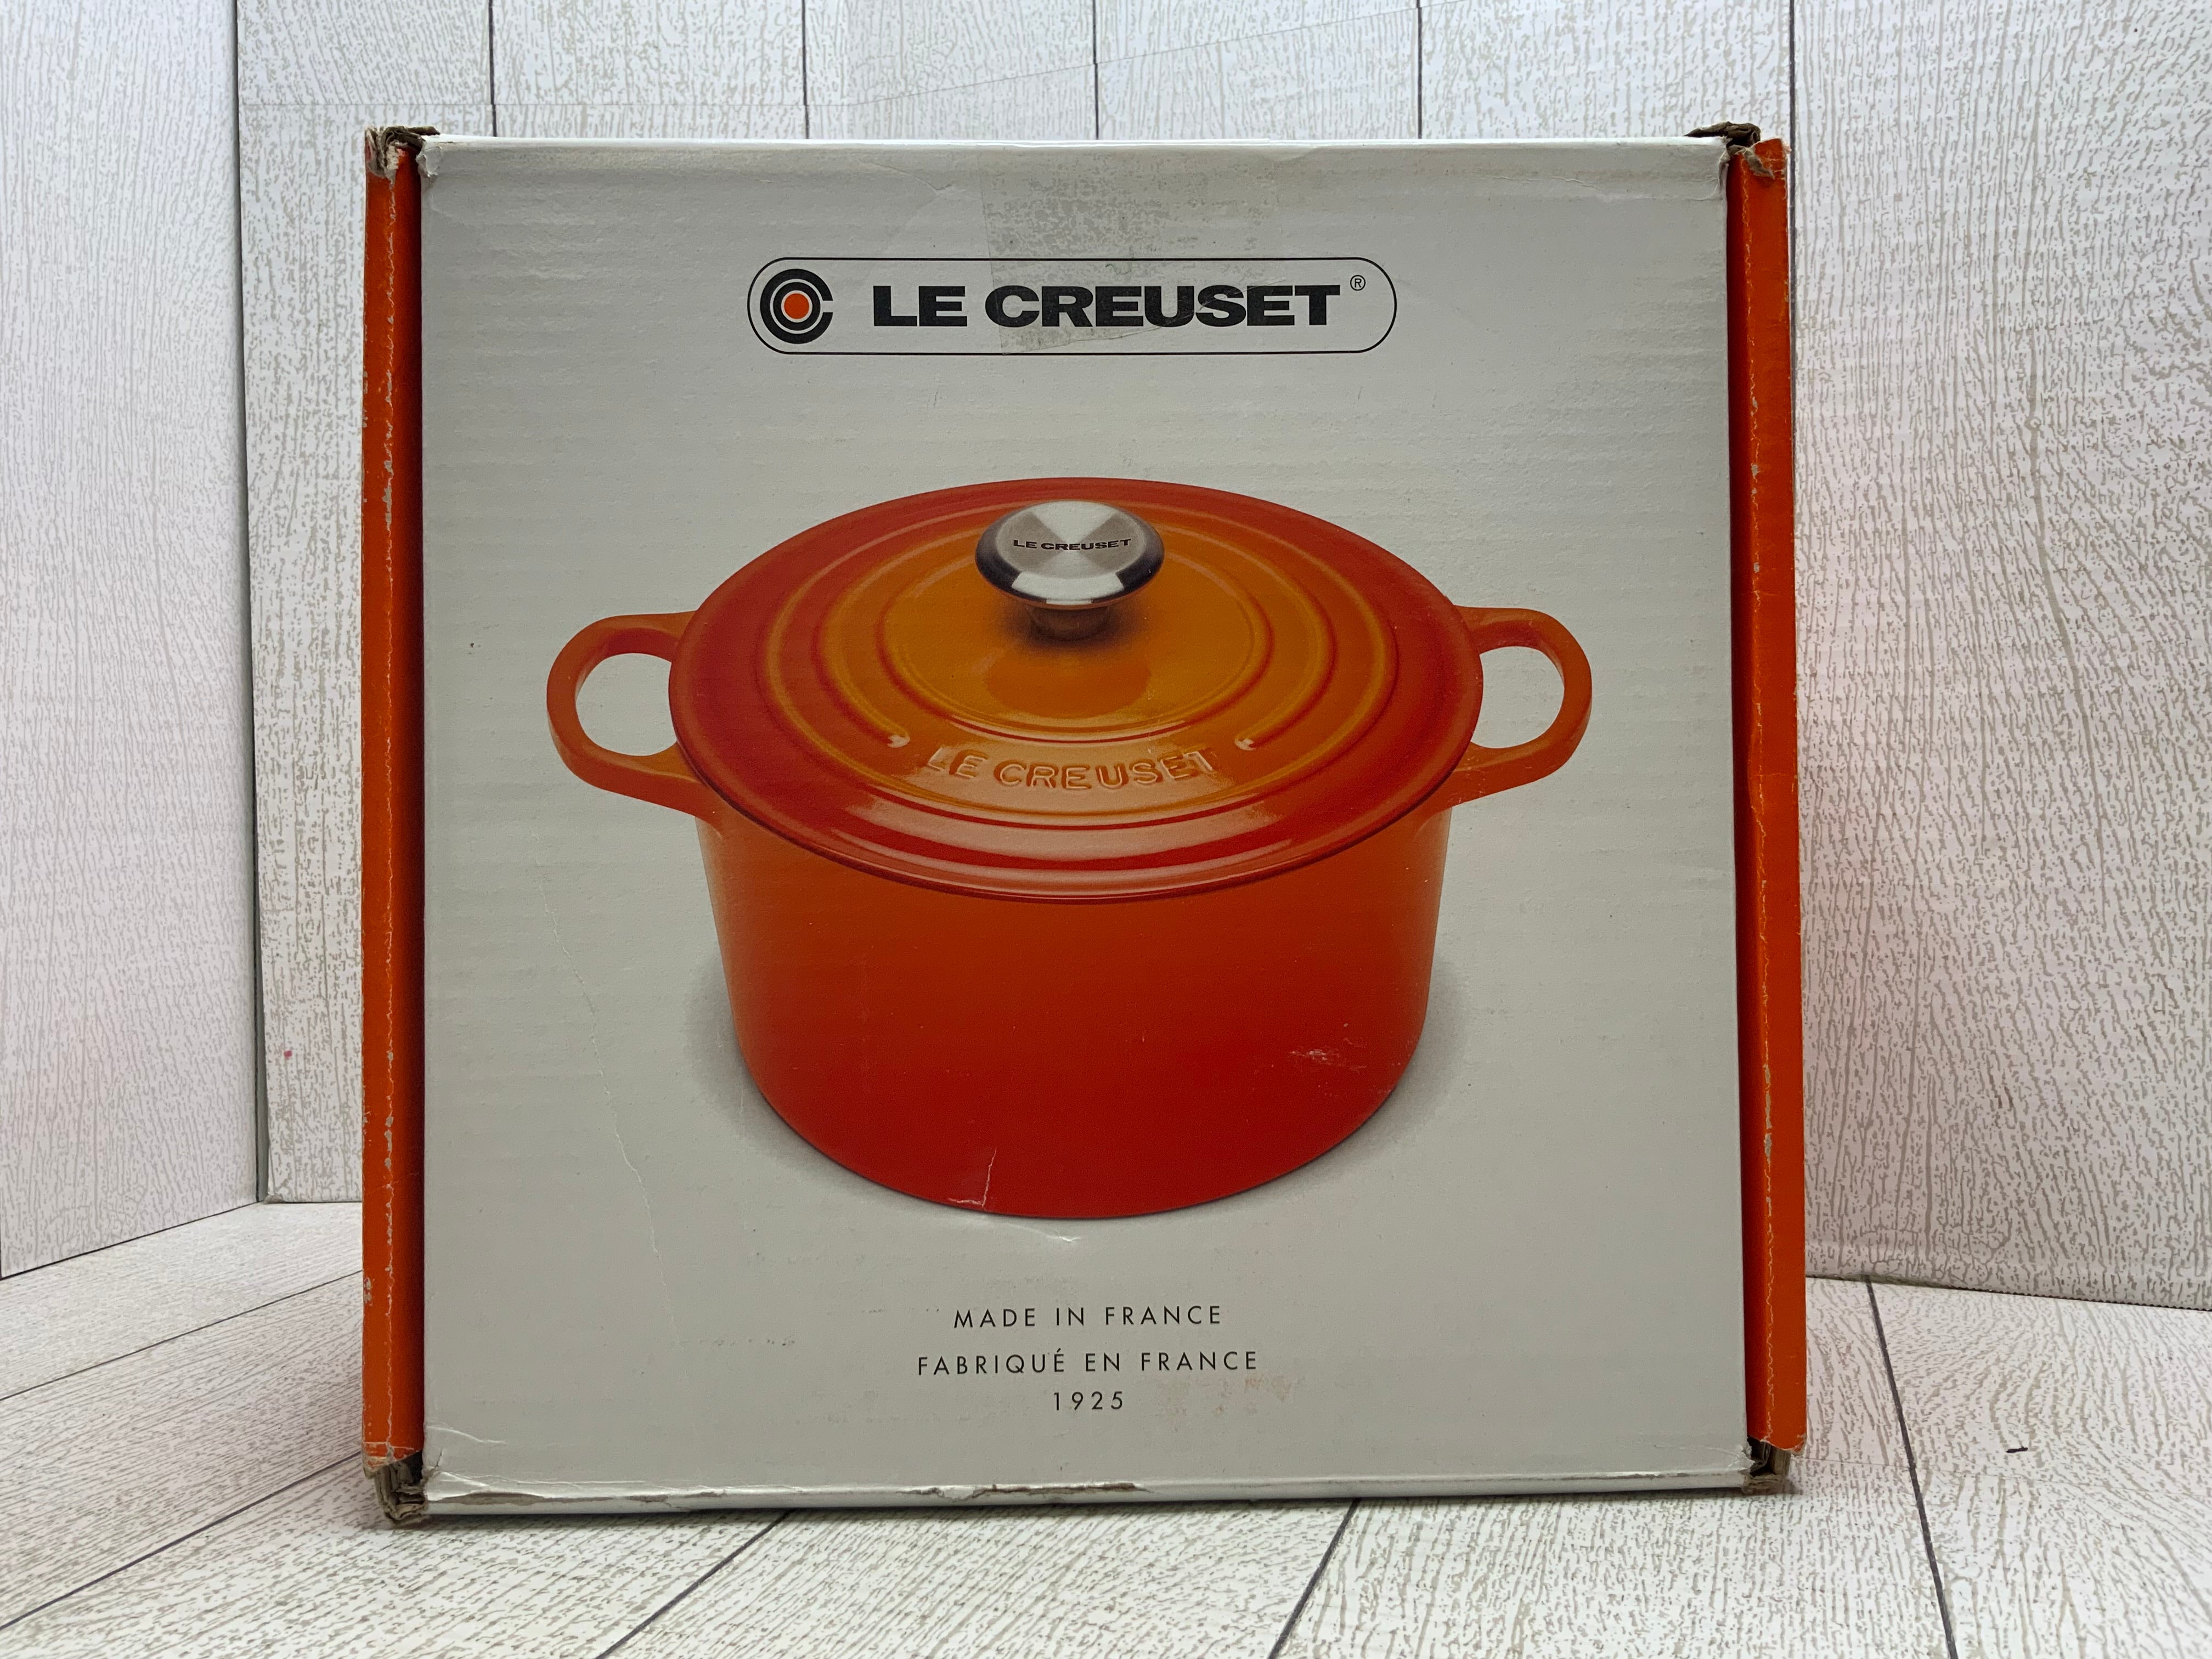 Le Creuset Enameled Cast Iron Signature Deep Round Oven, 5.25qt., White (8038472384750)